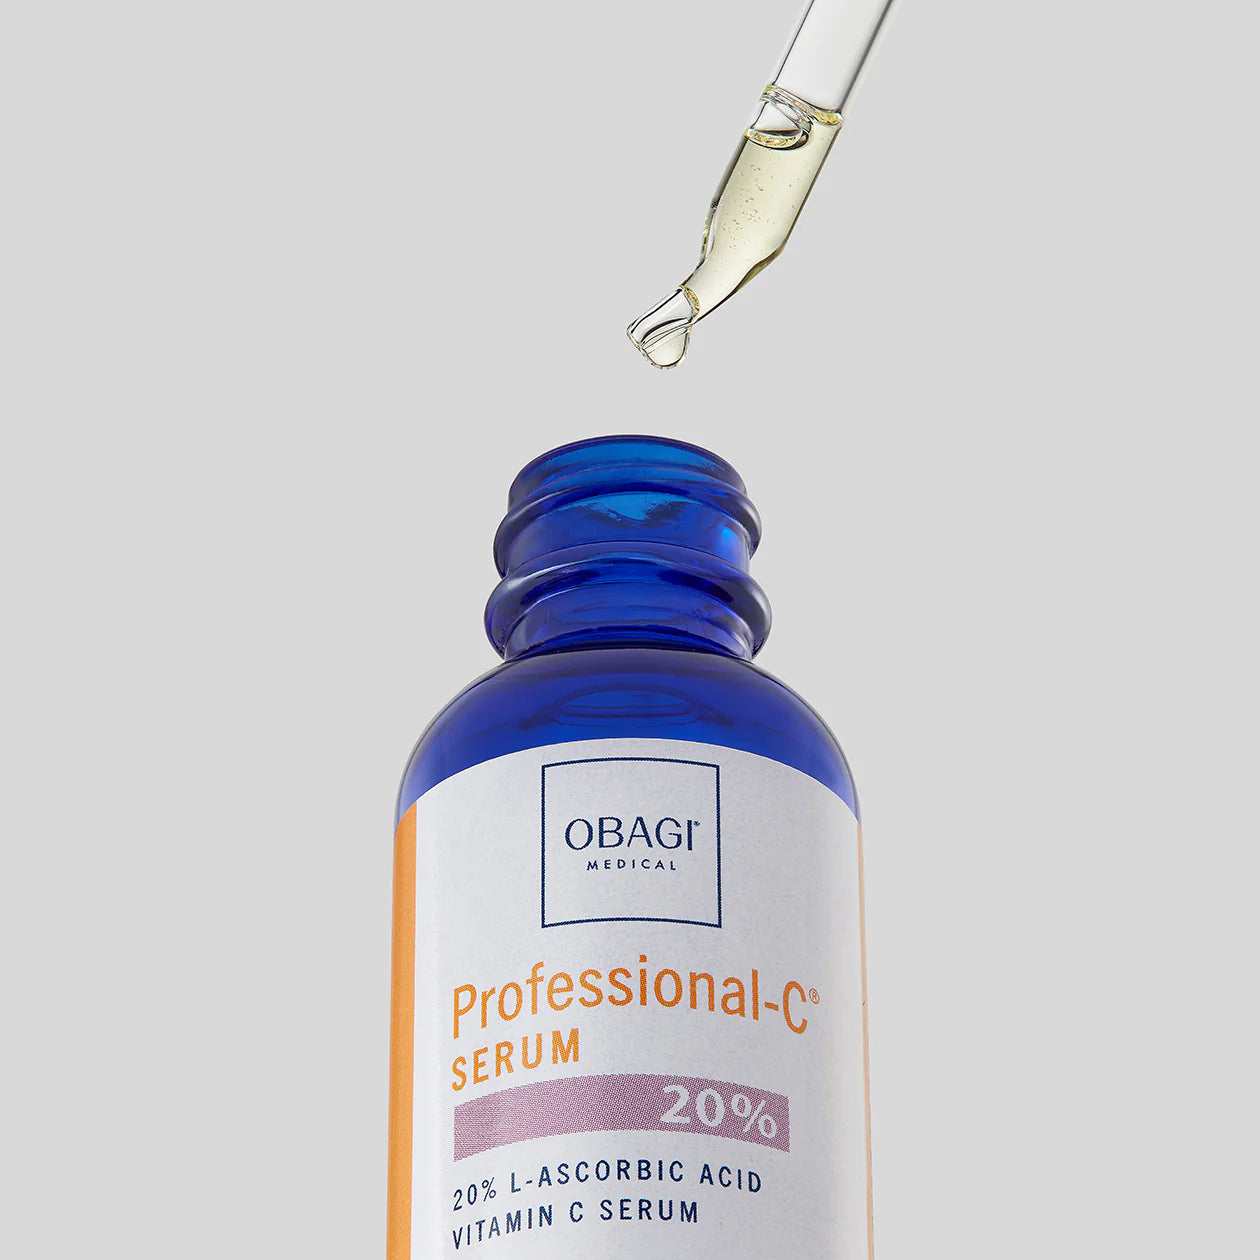 Obagi Medical Professional-C® SERUM 20% Vitamin C Serum